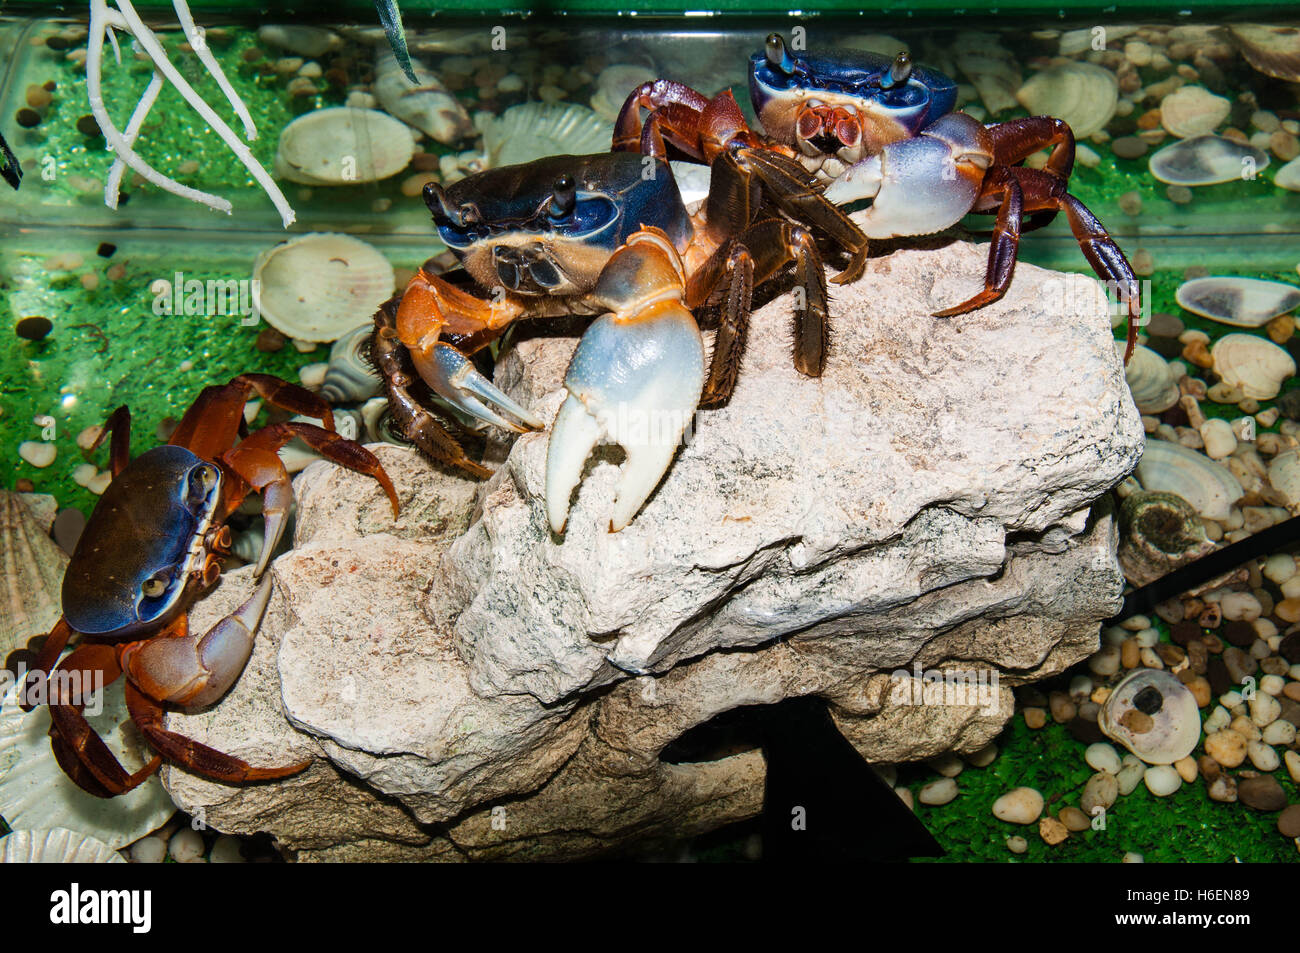 Rainbow crab or Cardisoma armatum in the Aquarium Stock Photo